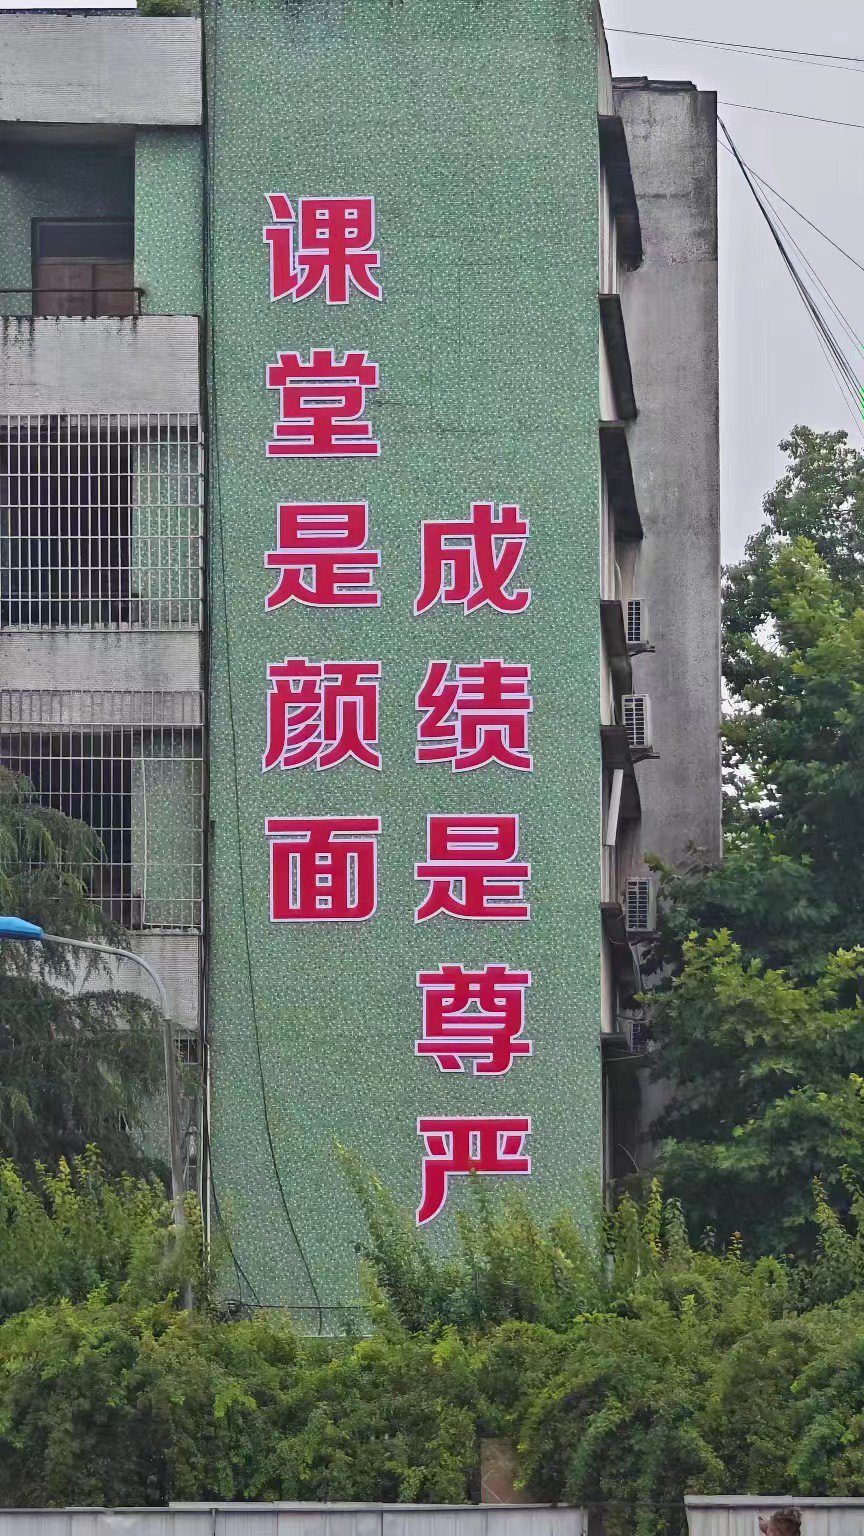 四川省岳池县某中学校内的标语。